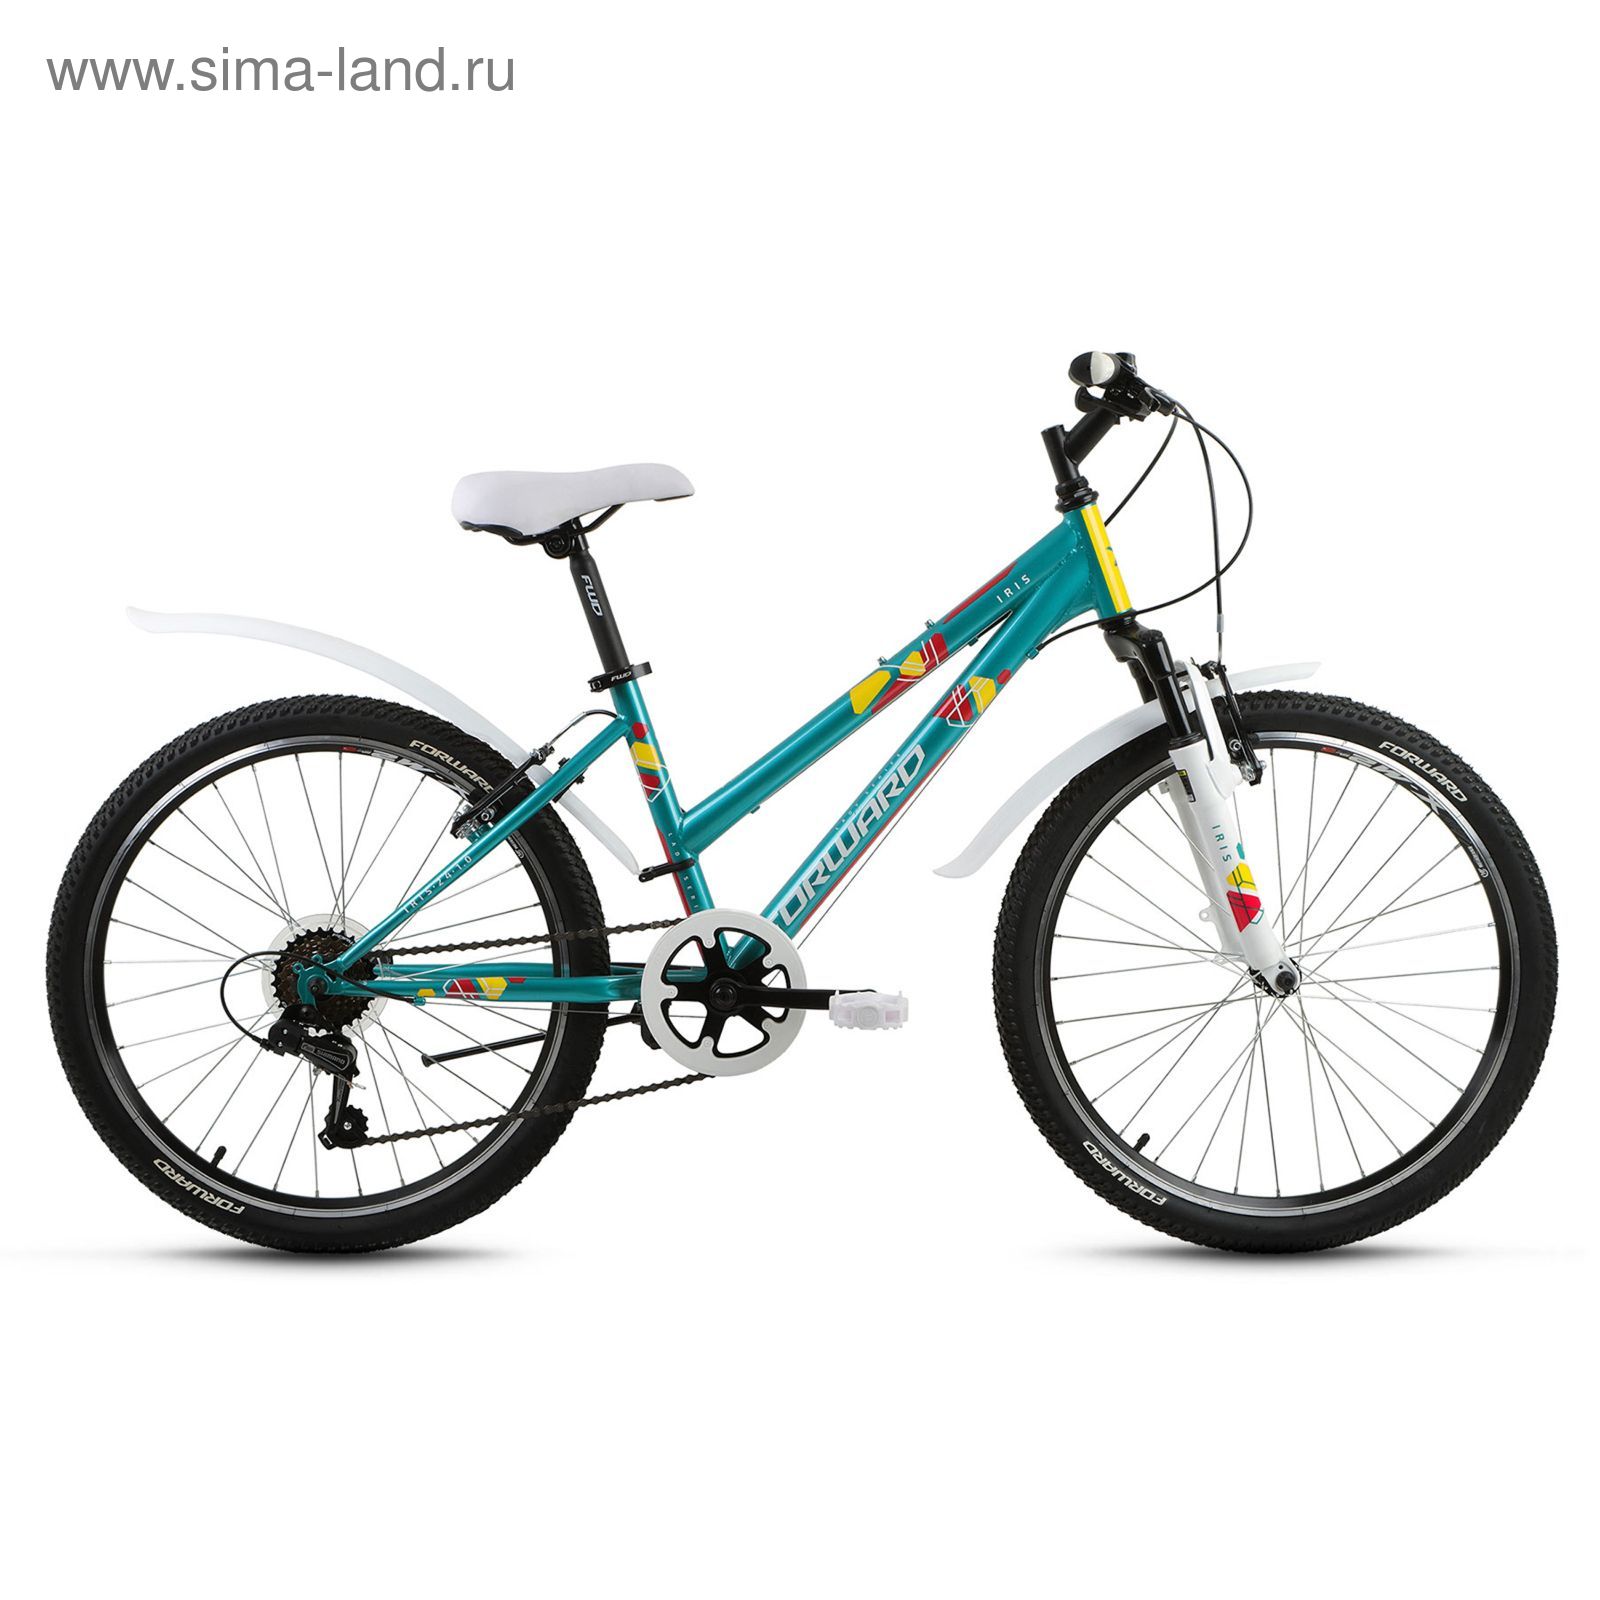 Велосипед 24" Forward Iris 1.0, 2017, цвет зеленый, размер 15"